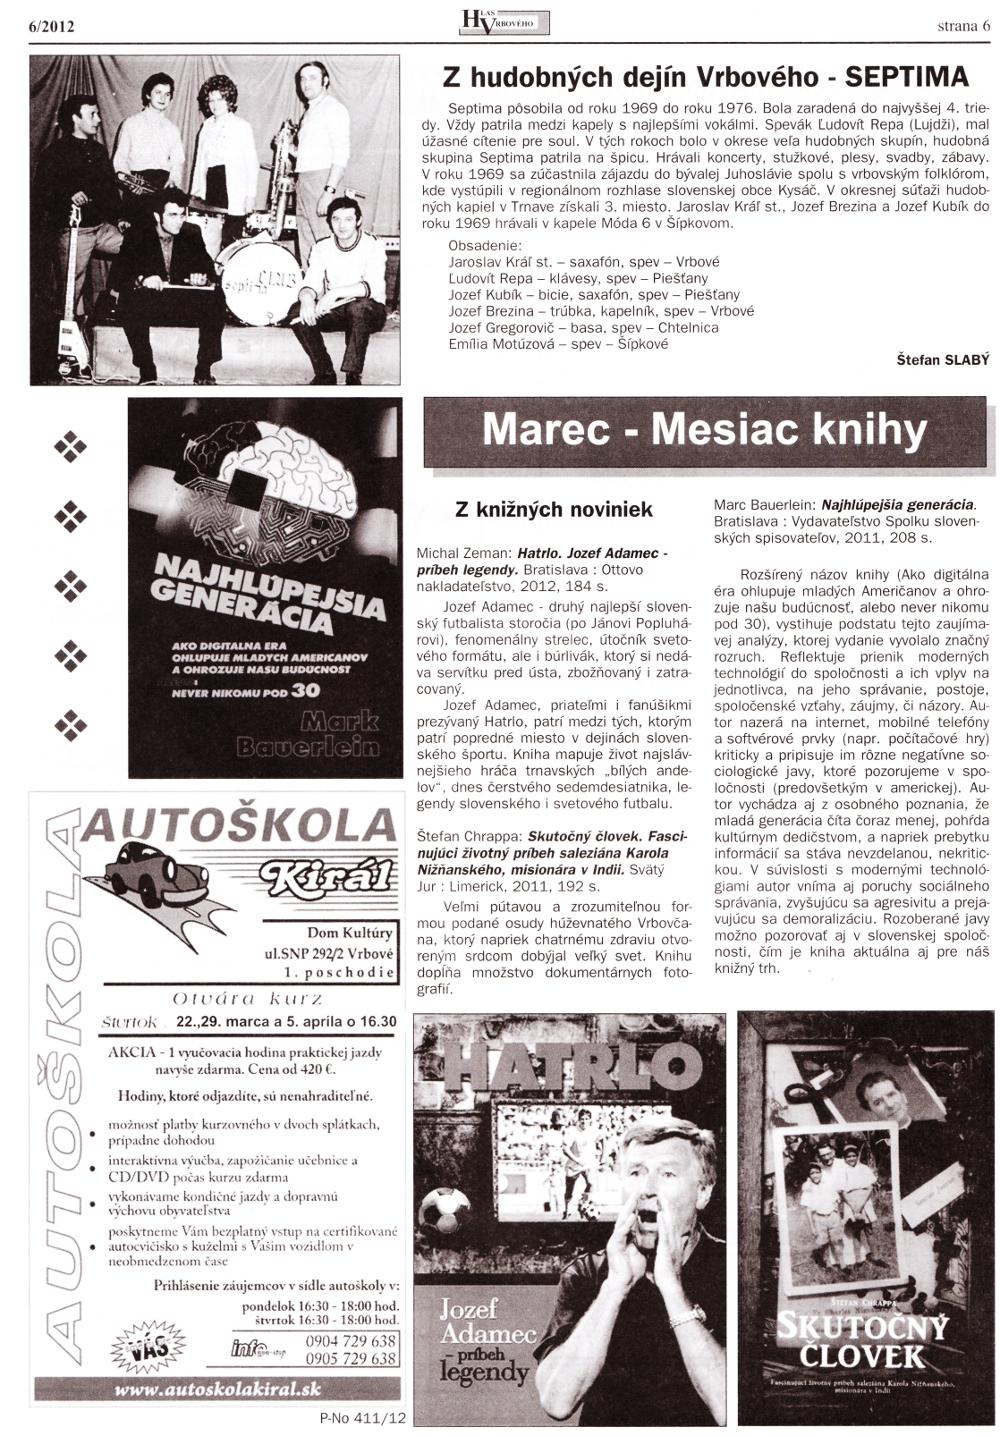 Hlas Vrbového 06/2012, strana 6